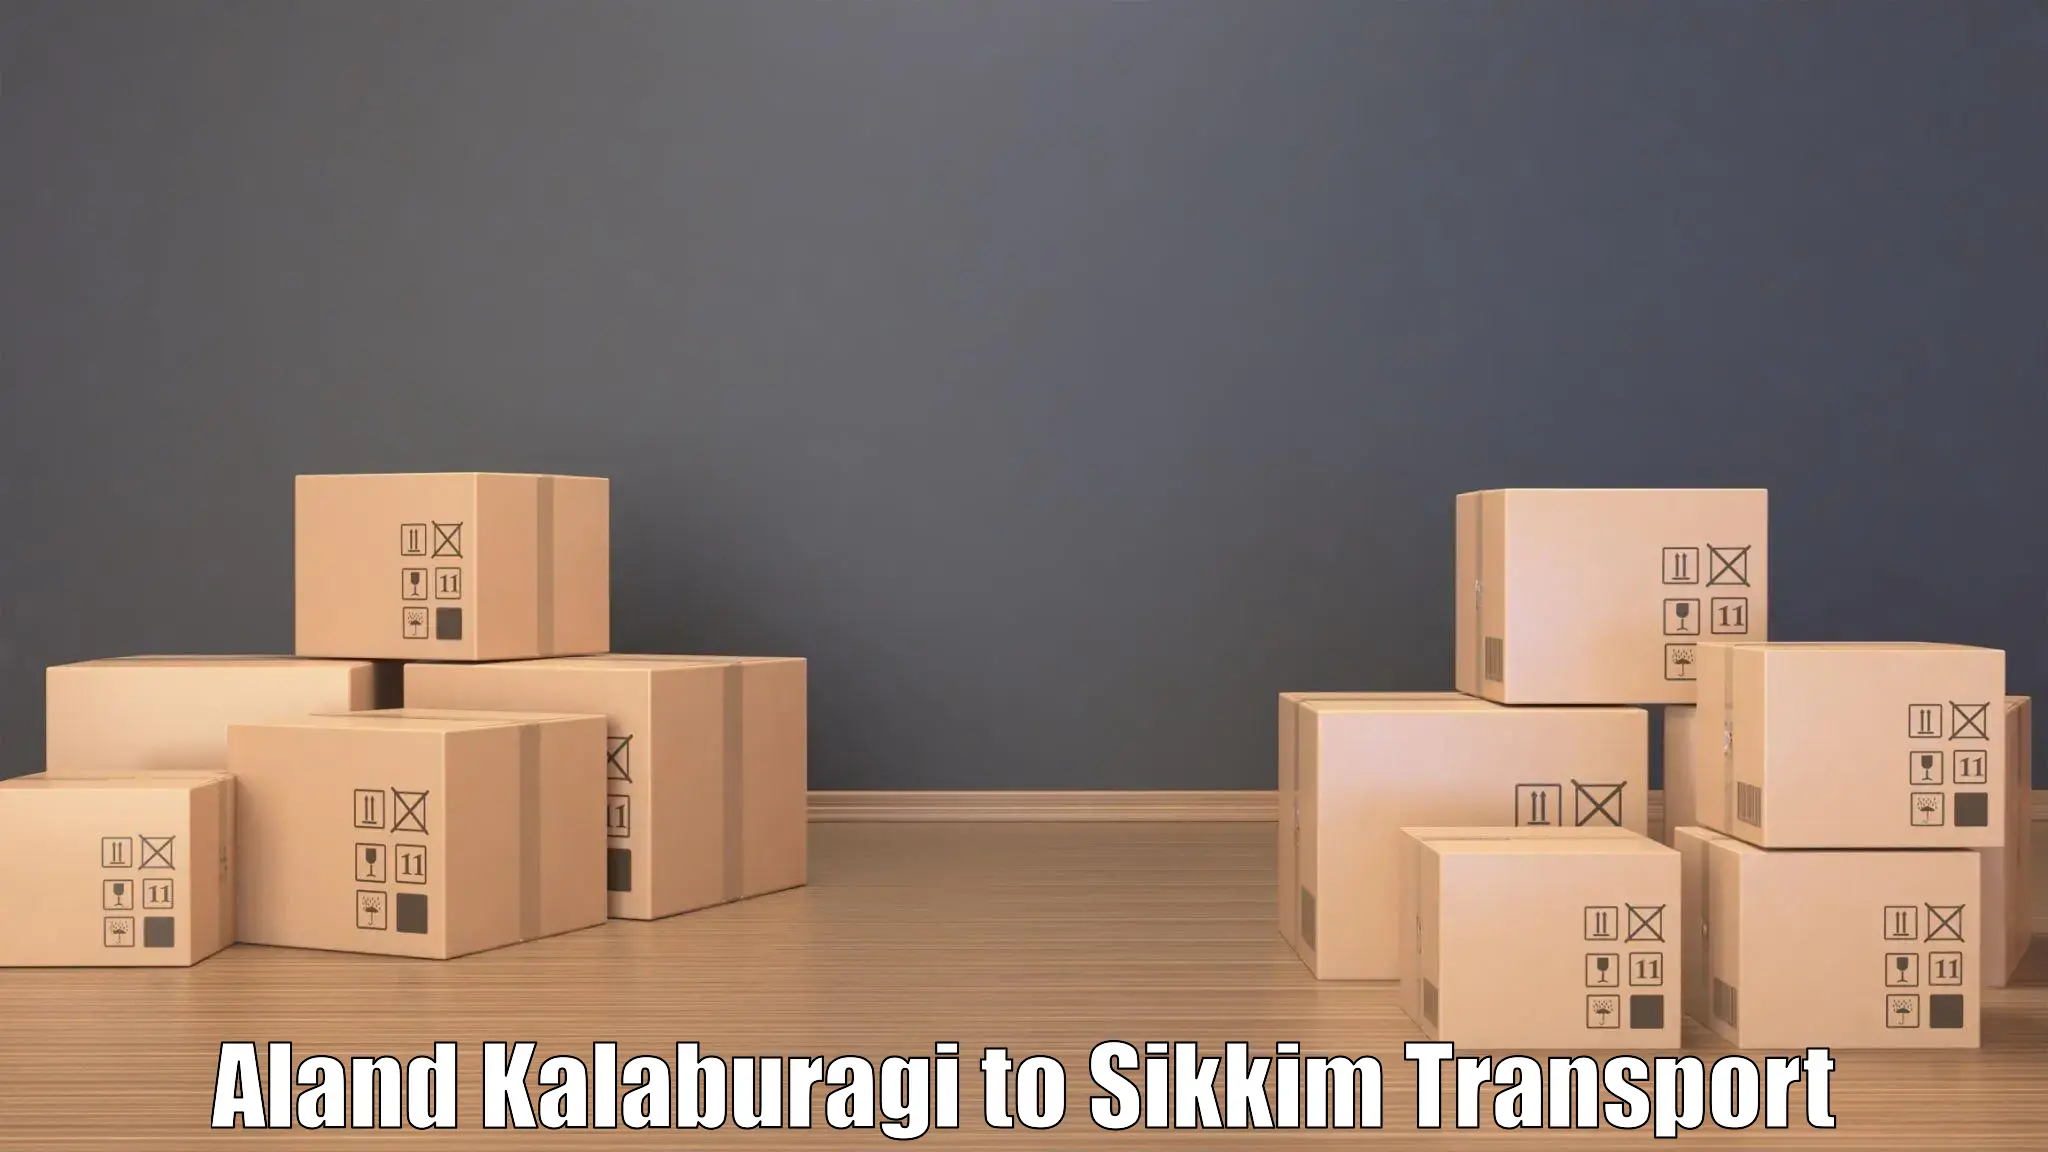 Transport services Aland Kalaburagi to South Sikkim